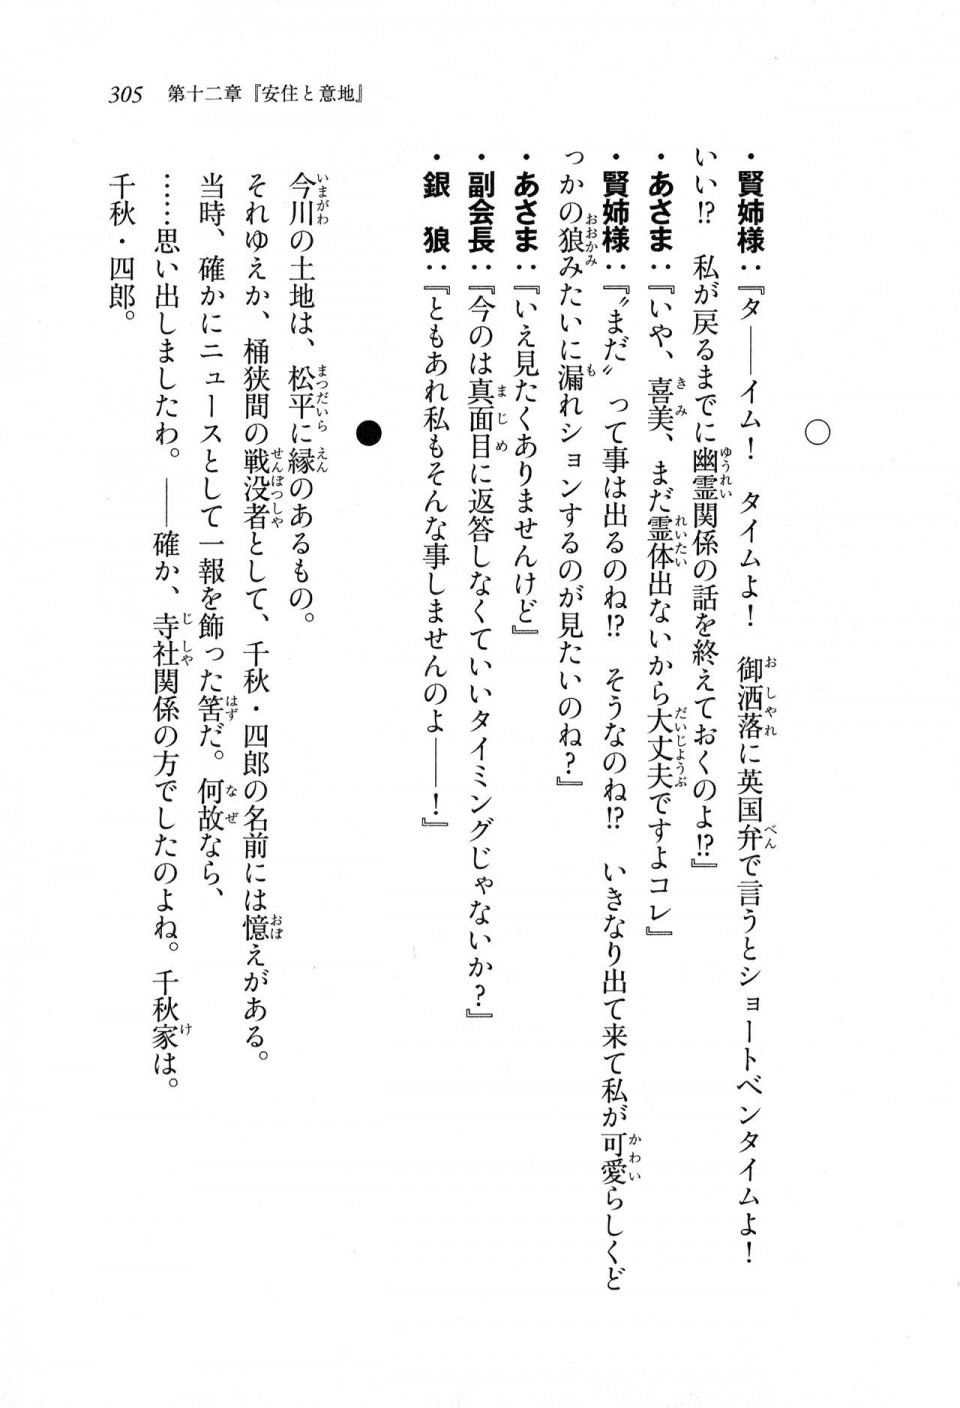 Kyoukai Senjou no Horizon LN Sidestory Vol 1 - Photo #303